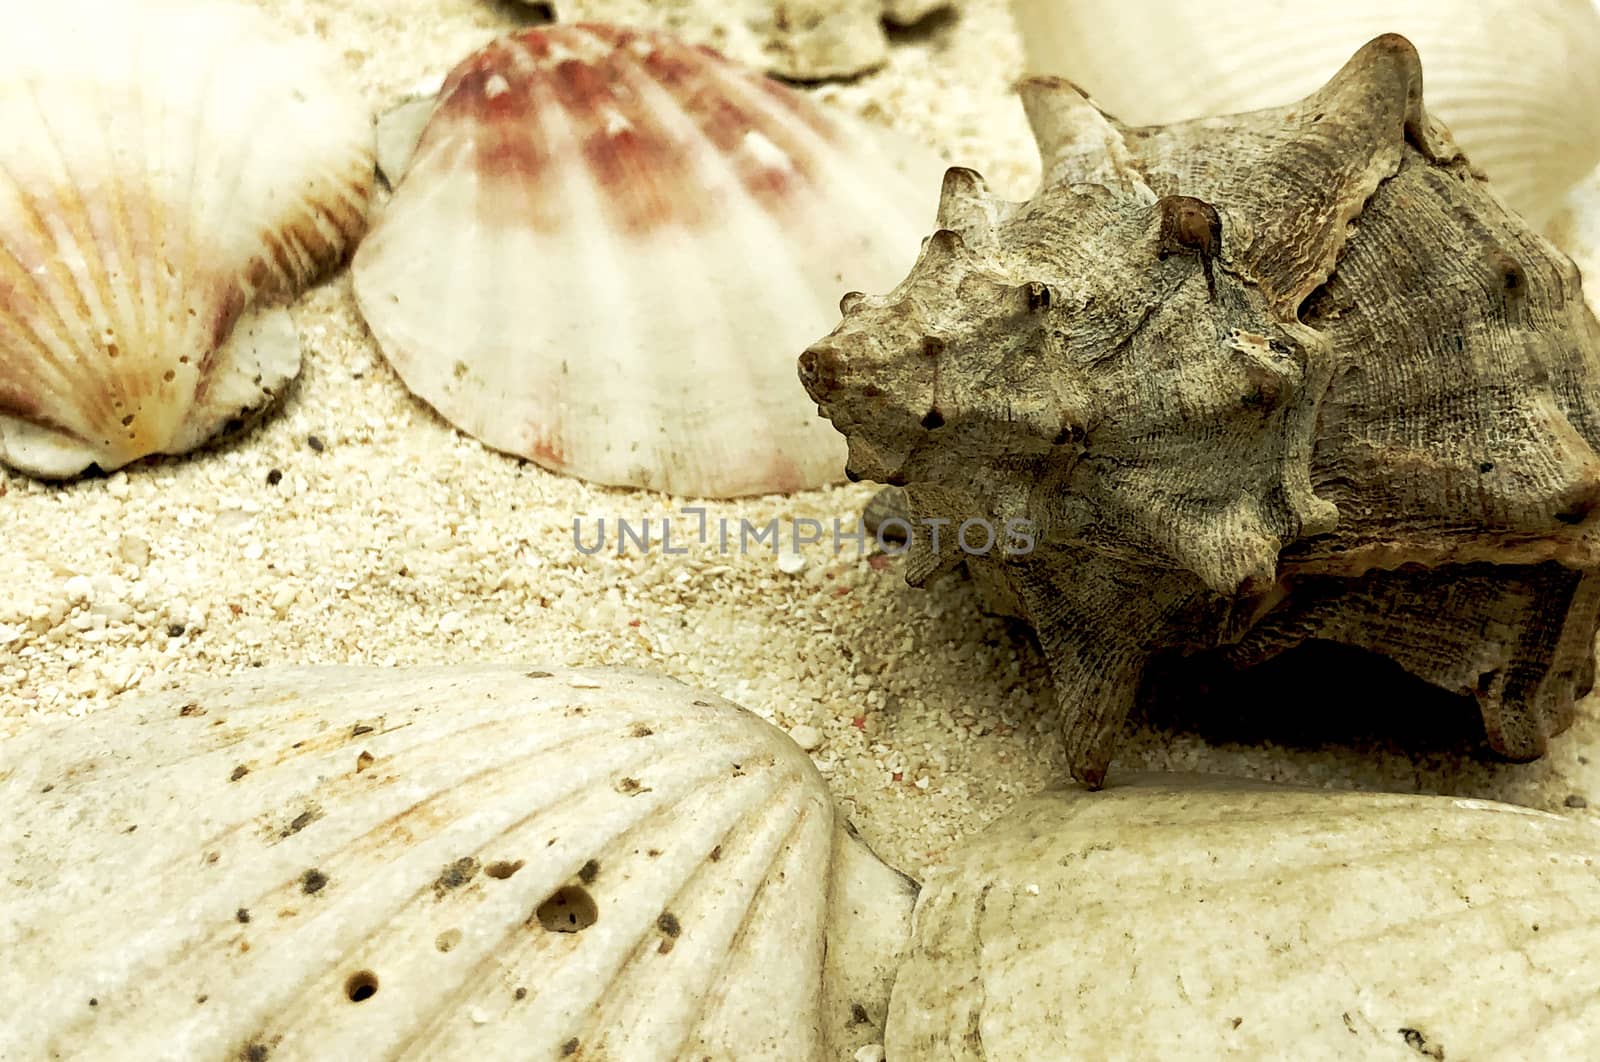 ocean sea shellfish and shells closeup on sand texture detail summer season travel beach  by F1b0nacci